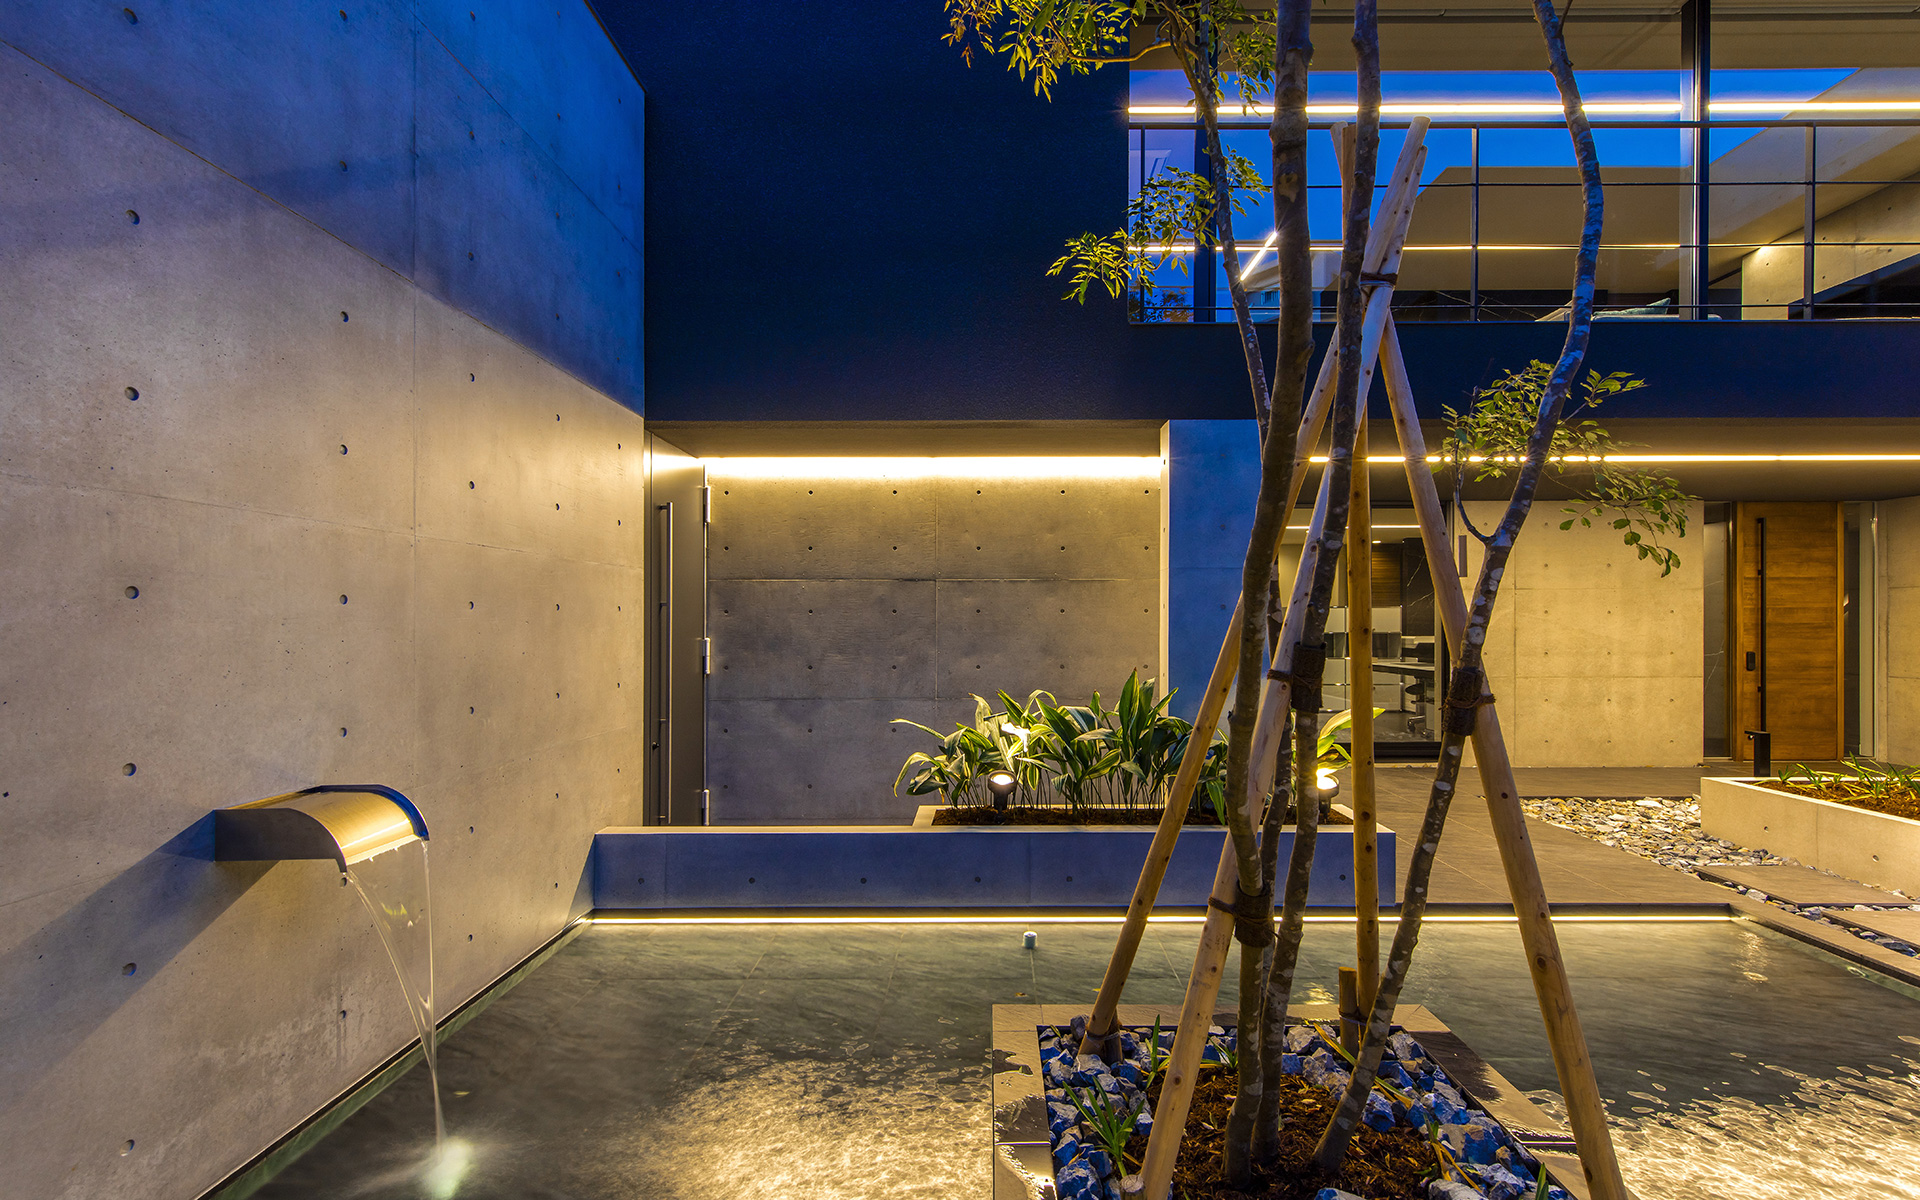 関西設計事務所によるライン照明で水平線の強調されたリゾートホテルライクな水盤のある中庭の夜景